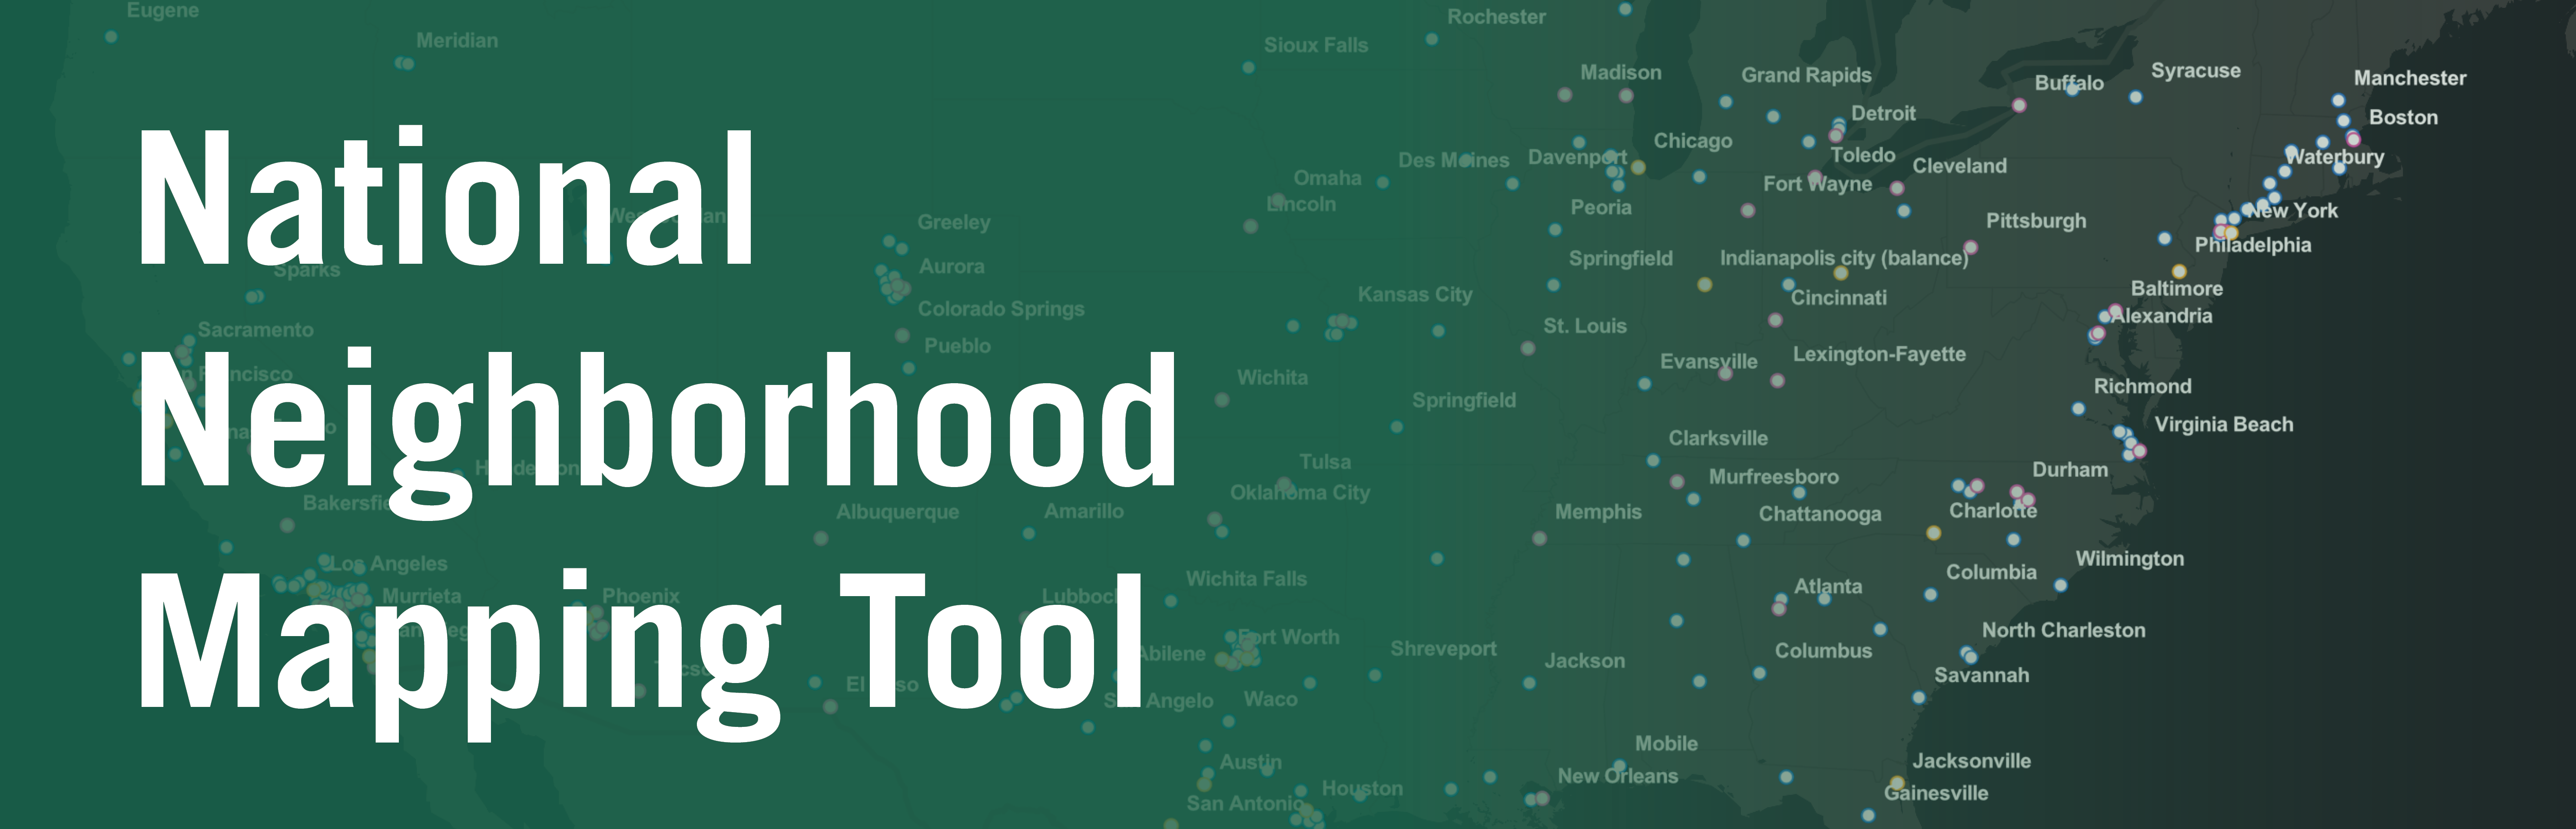 National Neighborhood Mapping Tool